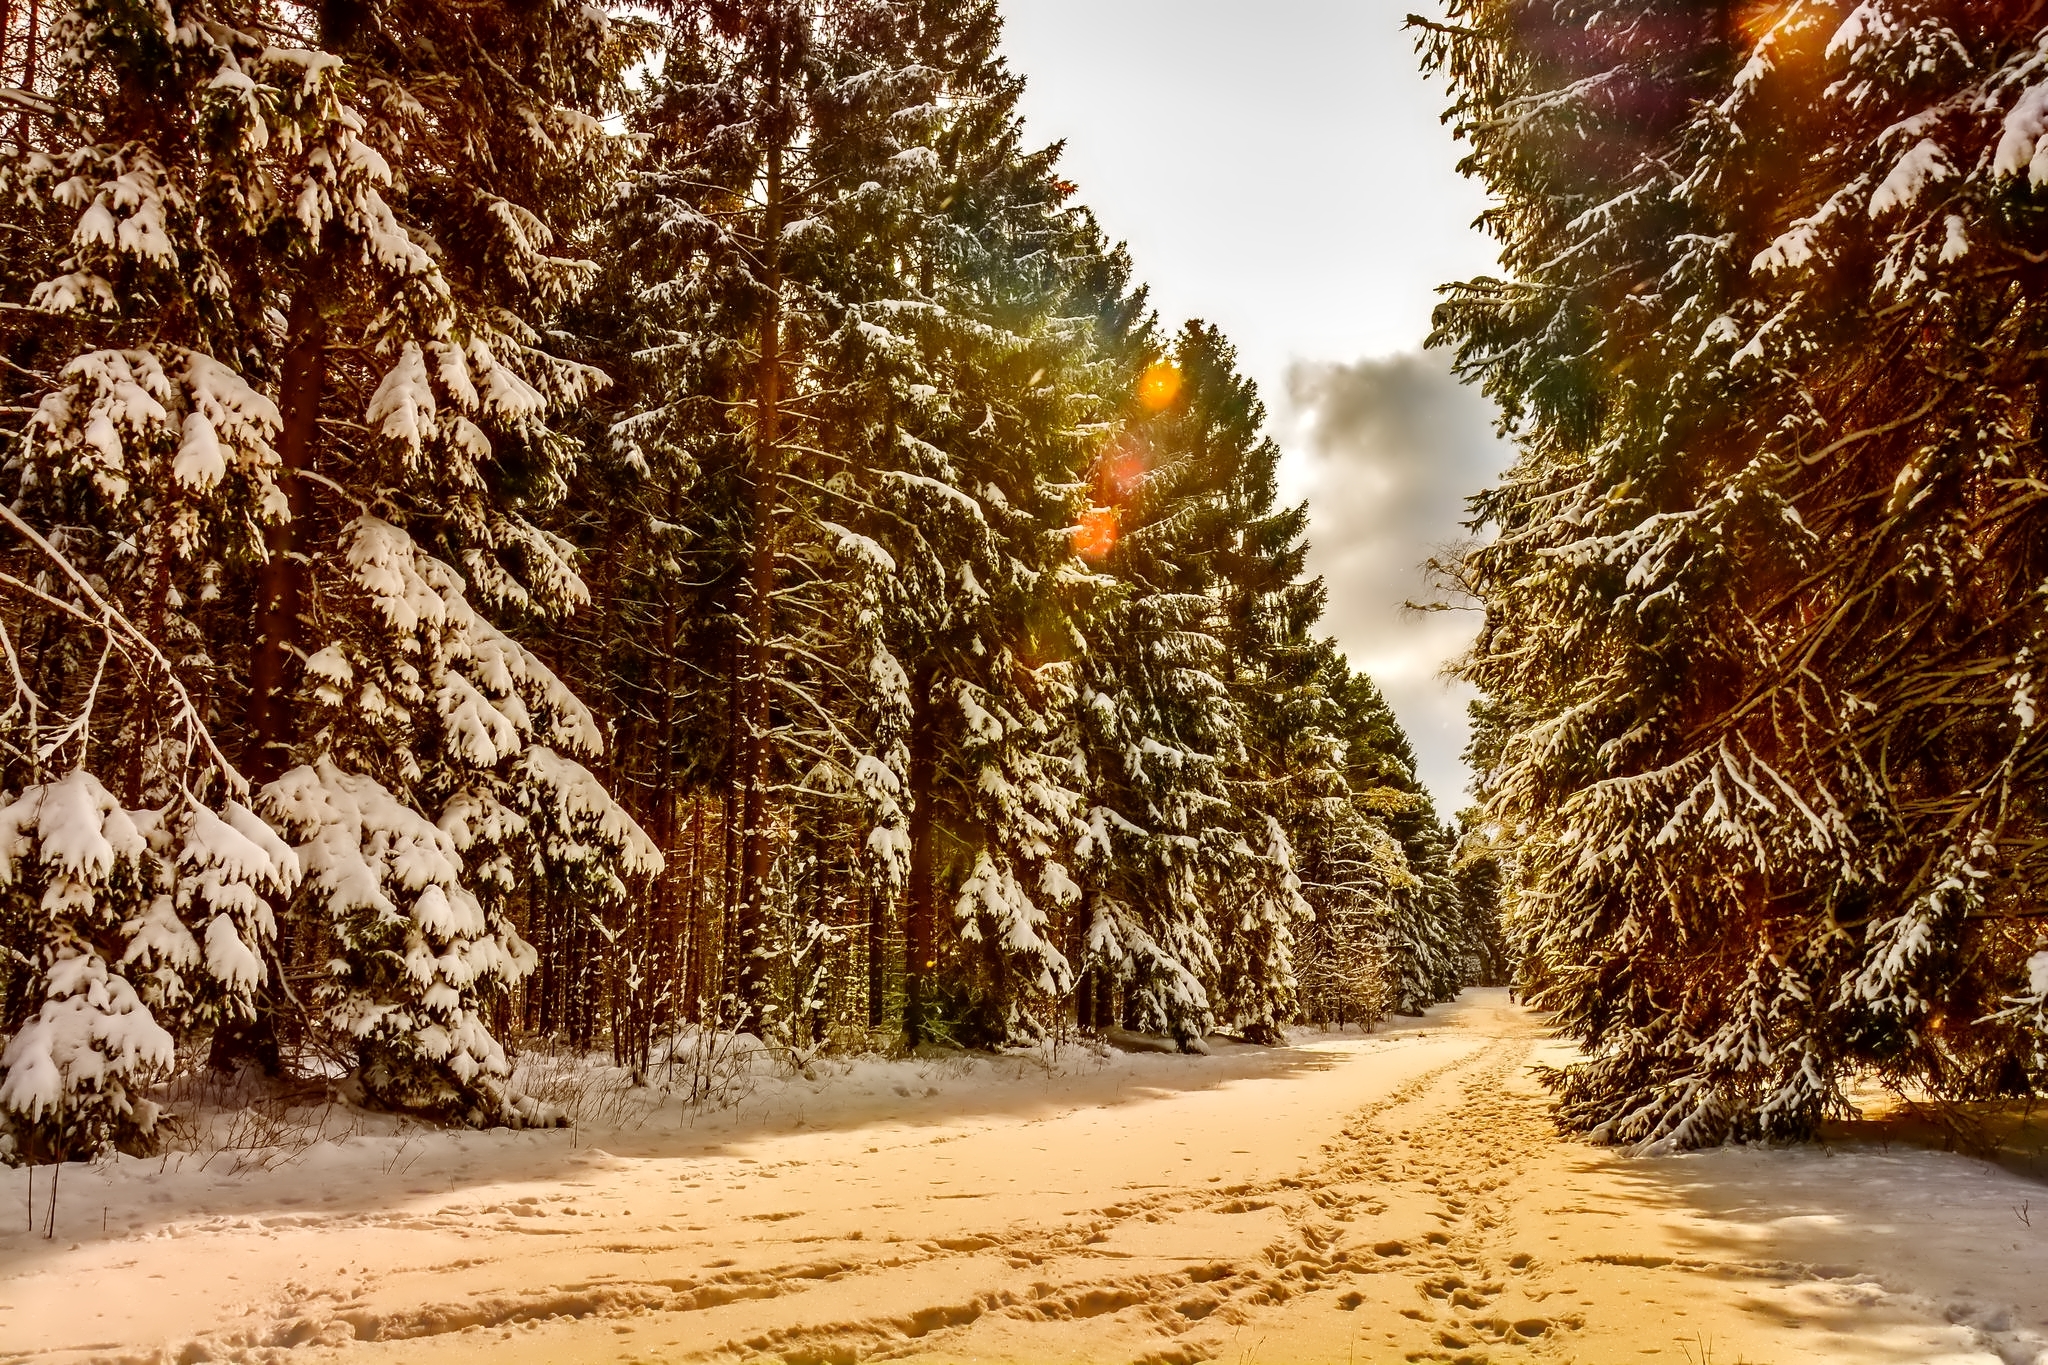 Скачать обои бесплатно Зима, Снег, Дорога, Дерево, Земля/природа картинка на рабочий стол ПК